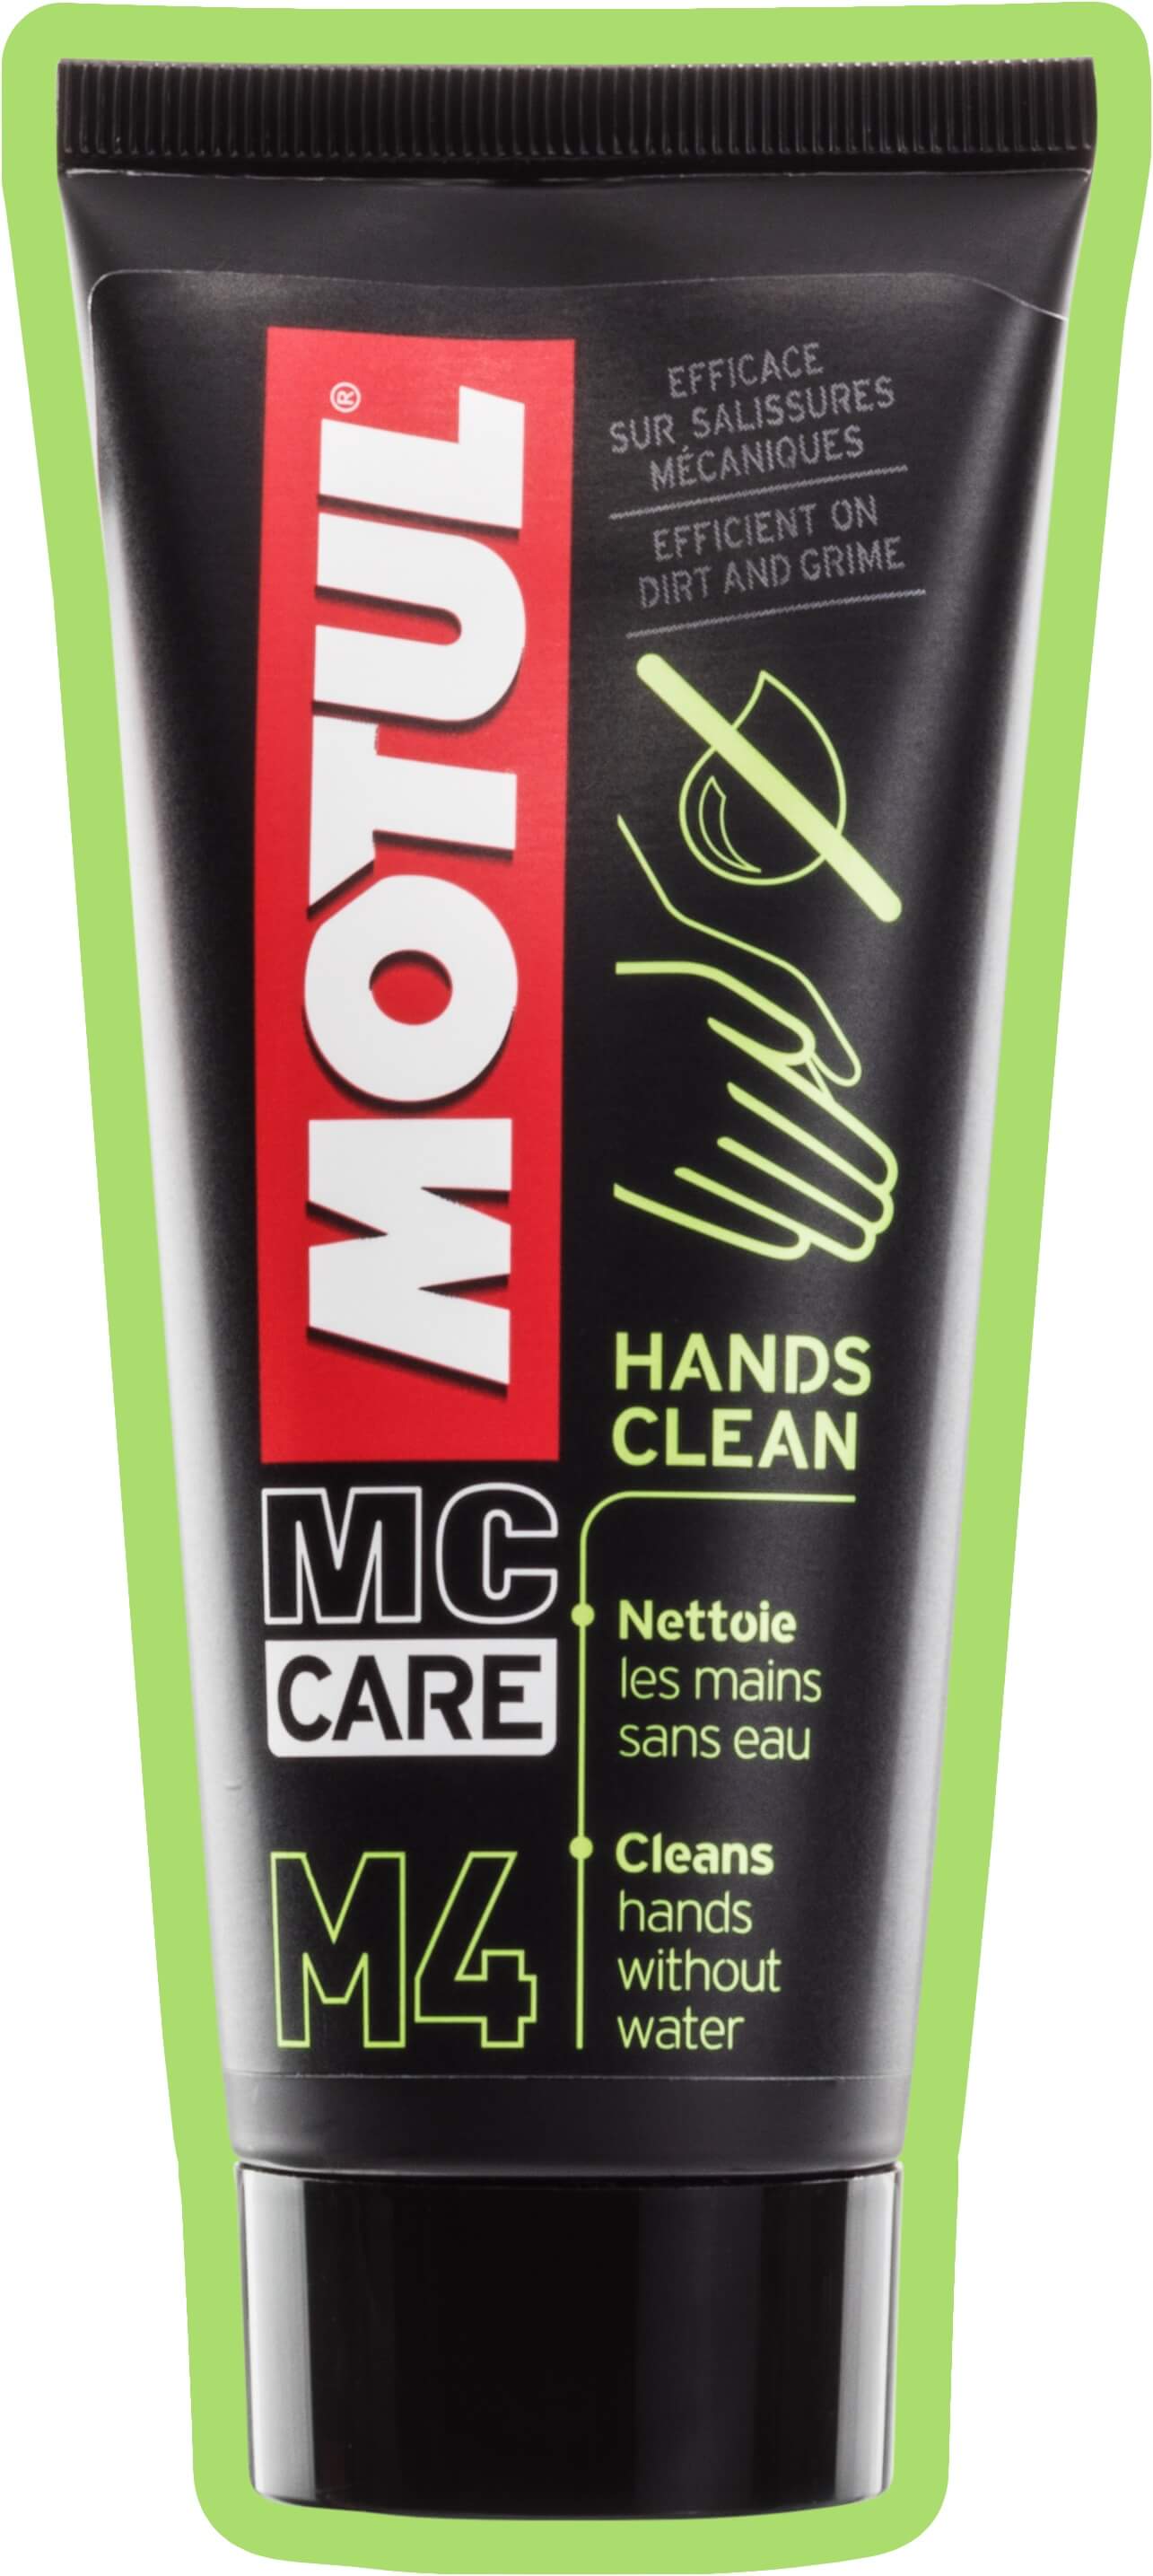 MOTUL M4 Hands Clean Handreiniger ohne Wasser 100ml